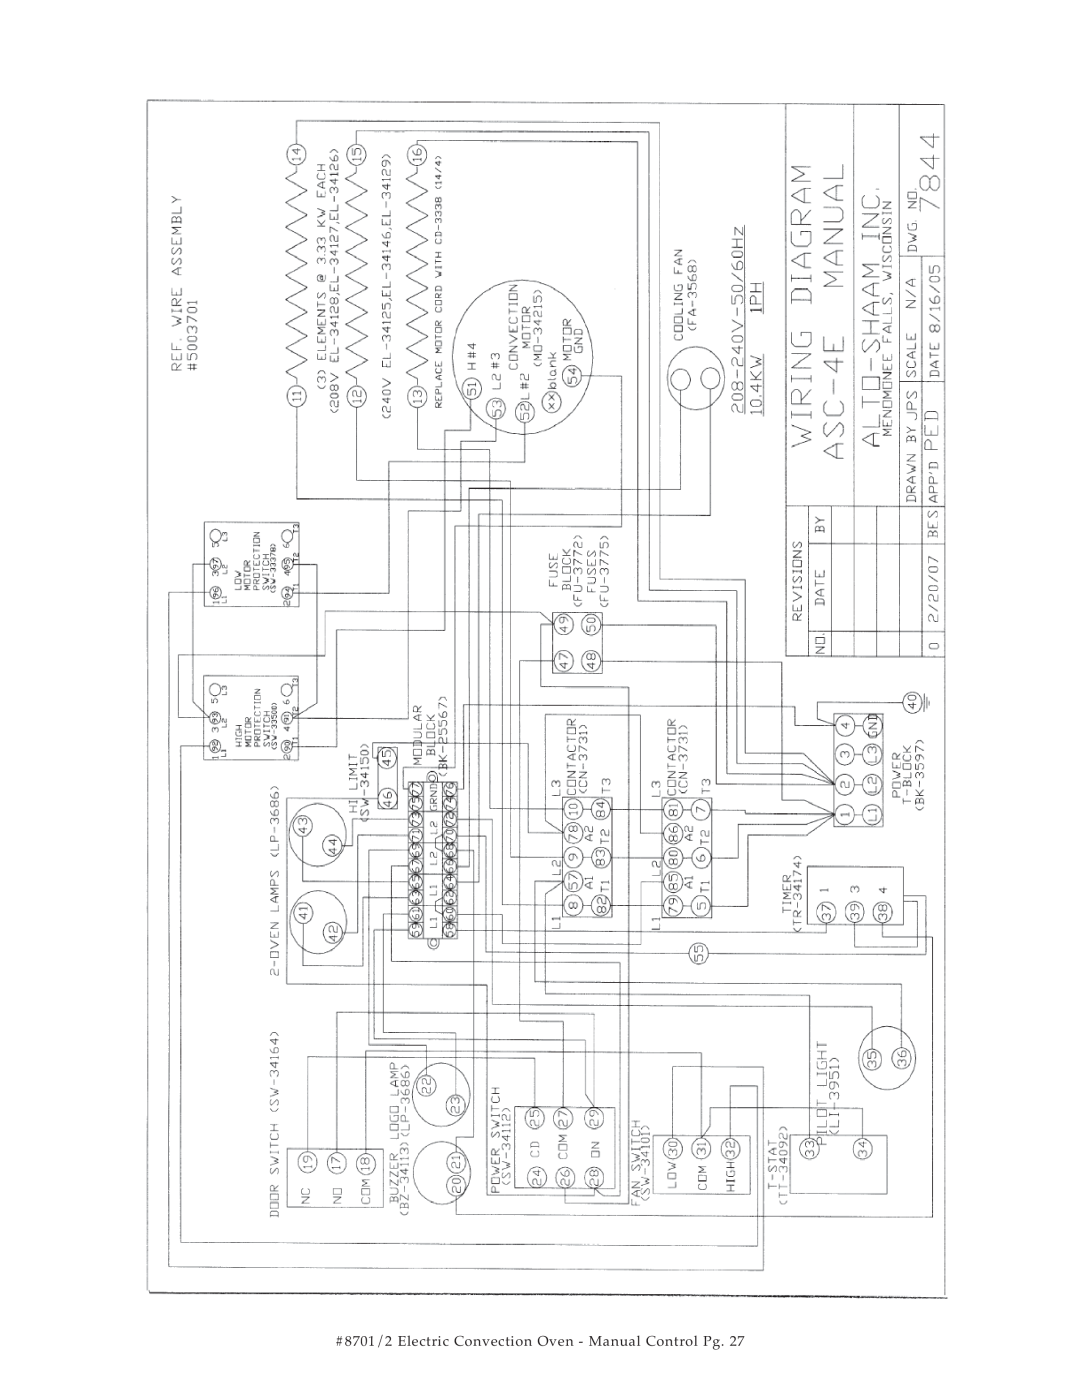 Cisco Systems ASC-2E, ASC-4E manual #8701/2 Electric Convection Oven - Manual Control Pg 